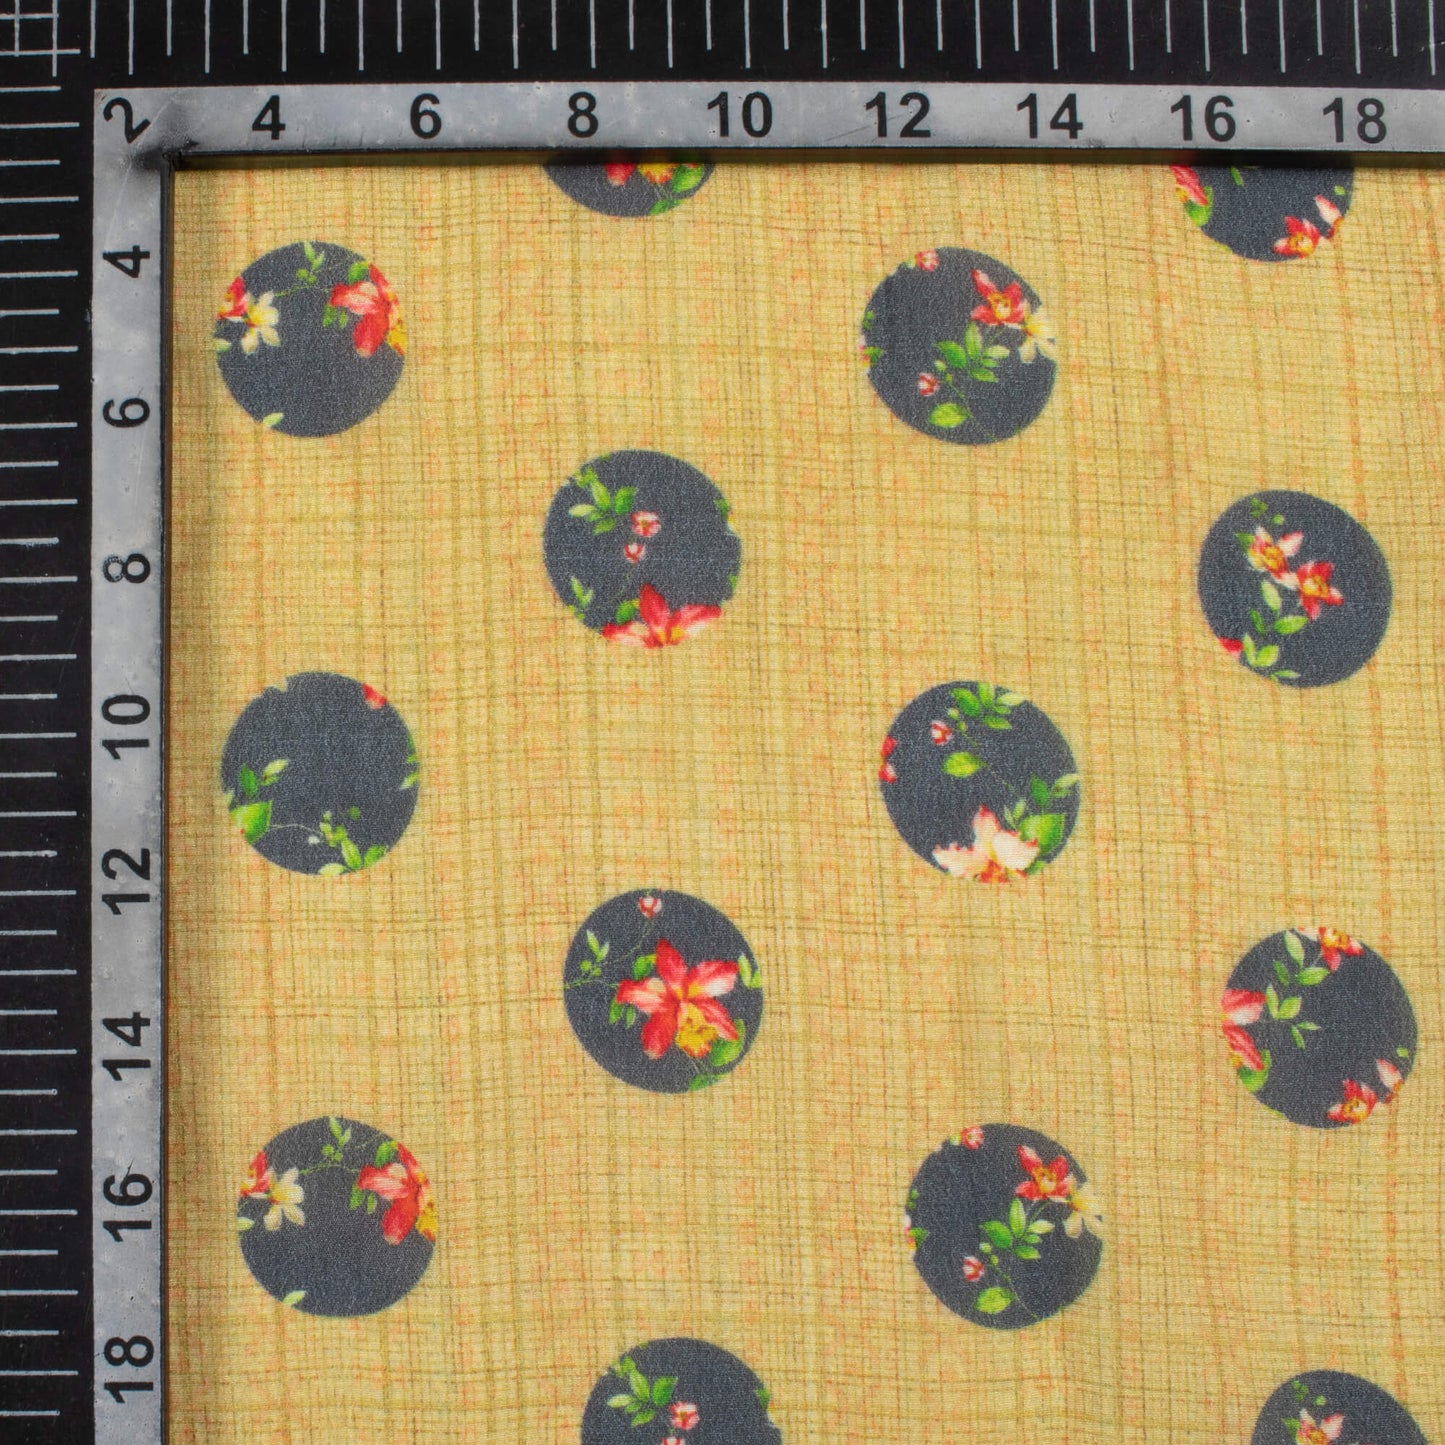 Flaxen Yellow And Grey Polka Dots Pattern Digital Print Viscose Natural Crepe Fabric